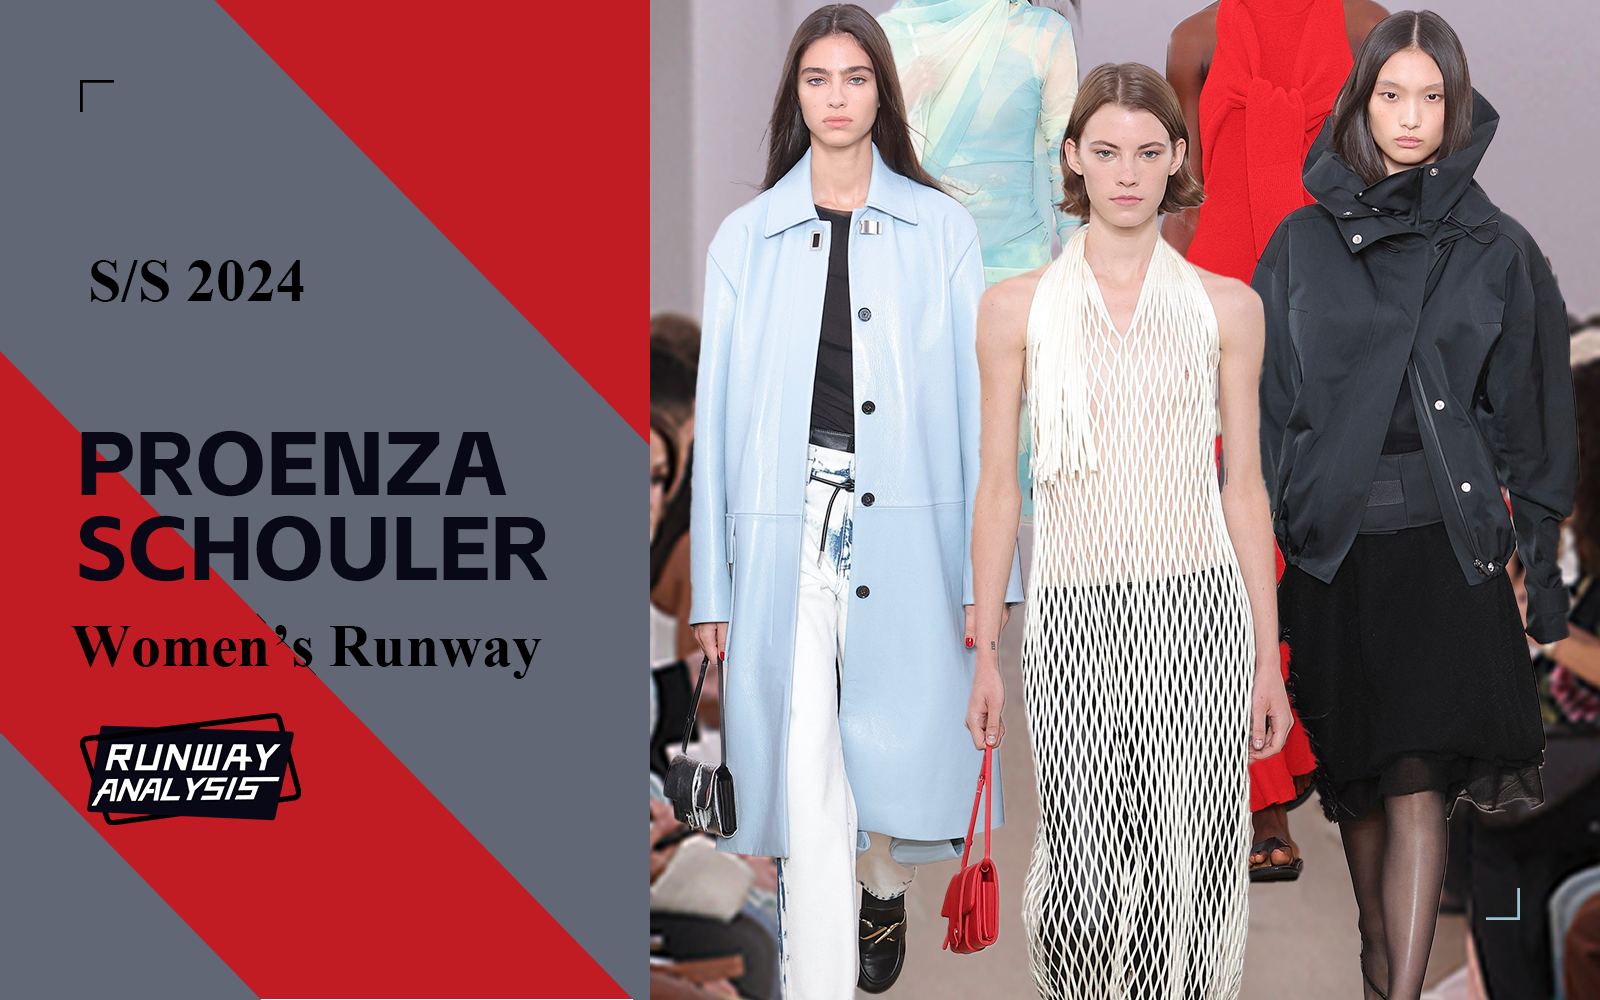 The Womenswear Runway Analysis of Proenza Schouler